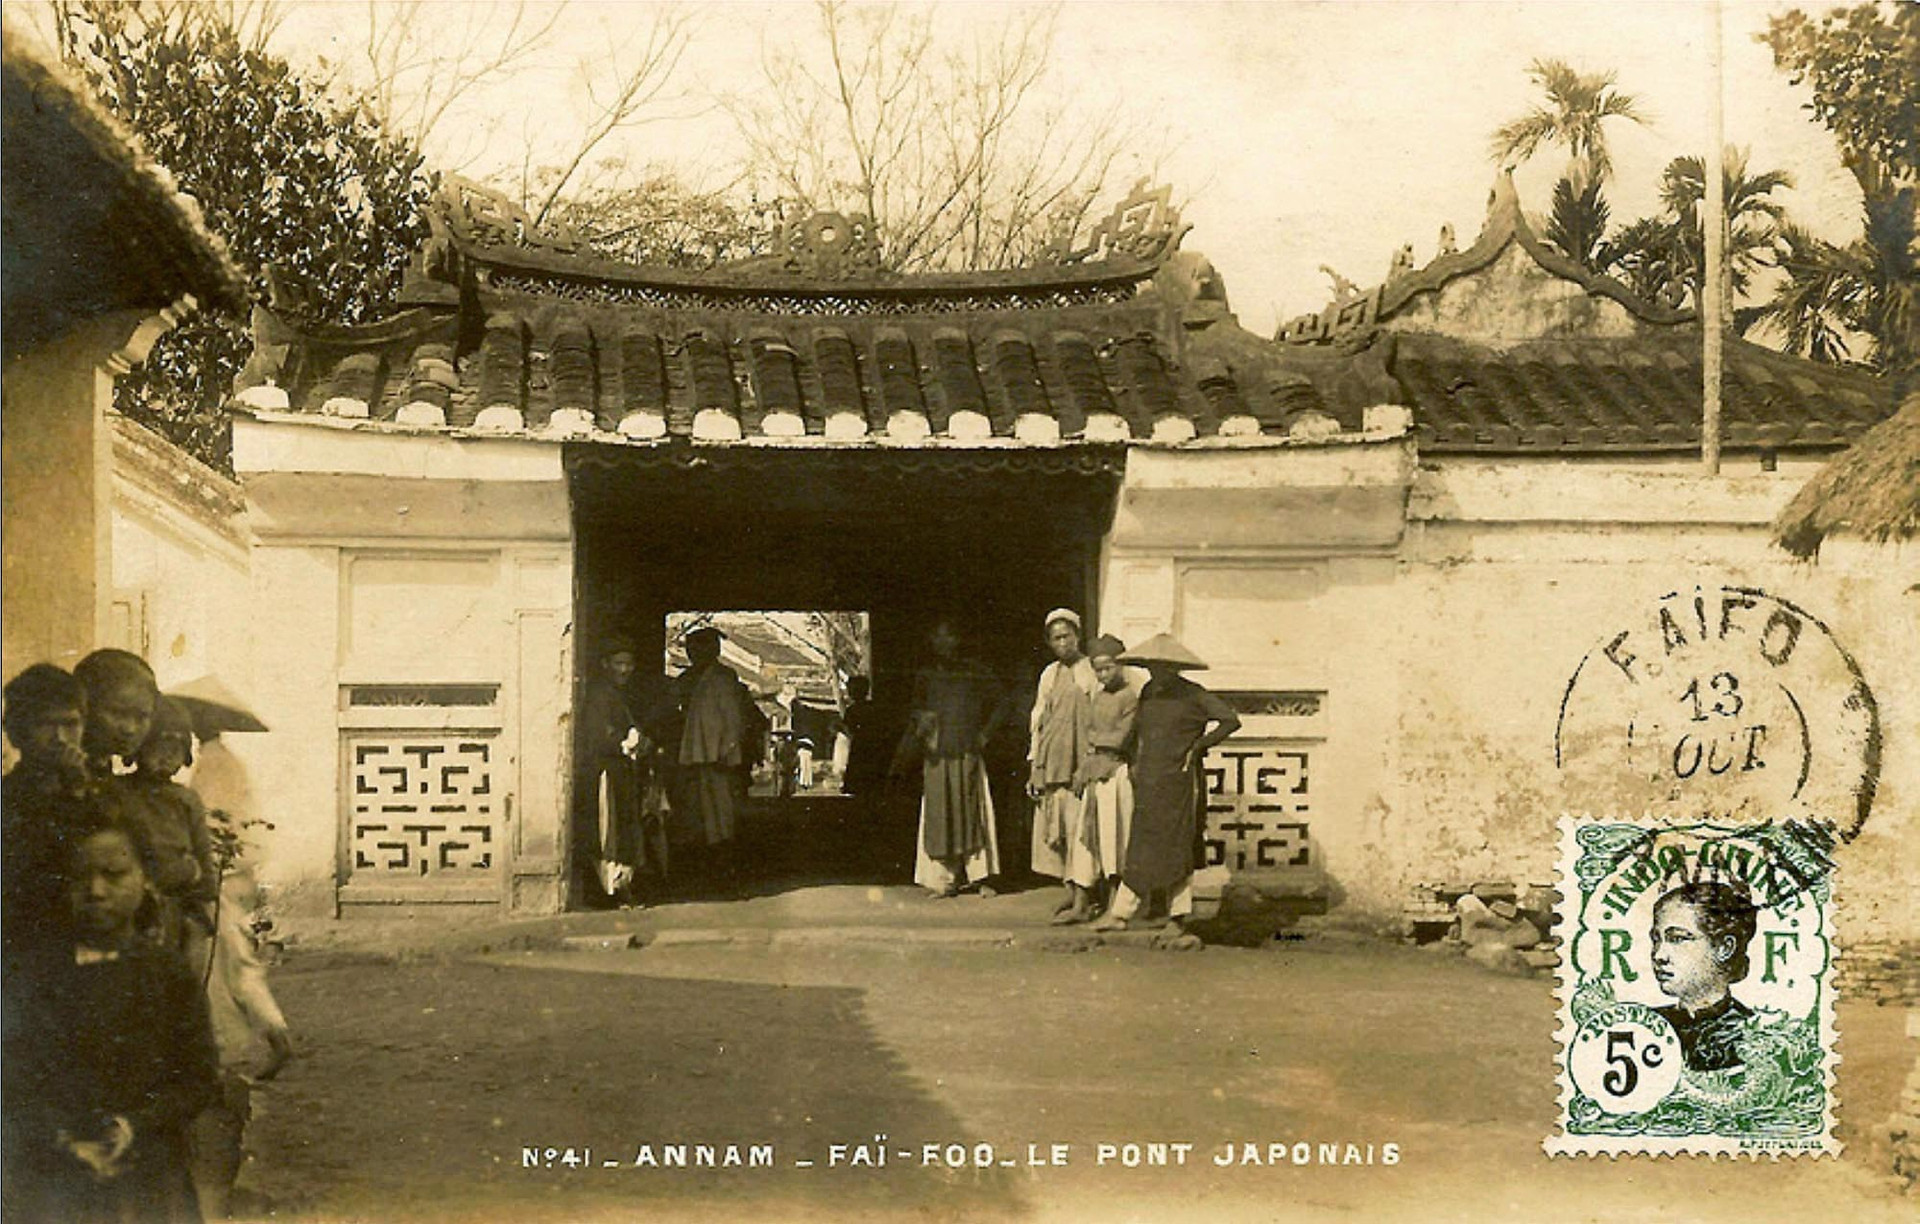 Chùa Cầu khoảng 1910-1915. Nguồn flickr.com